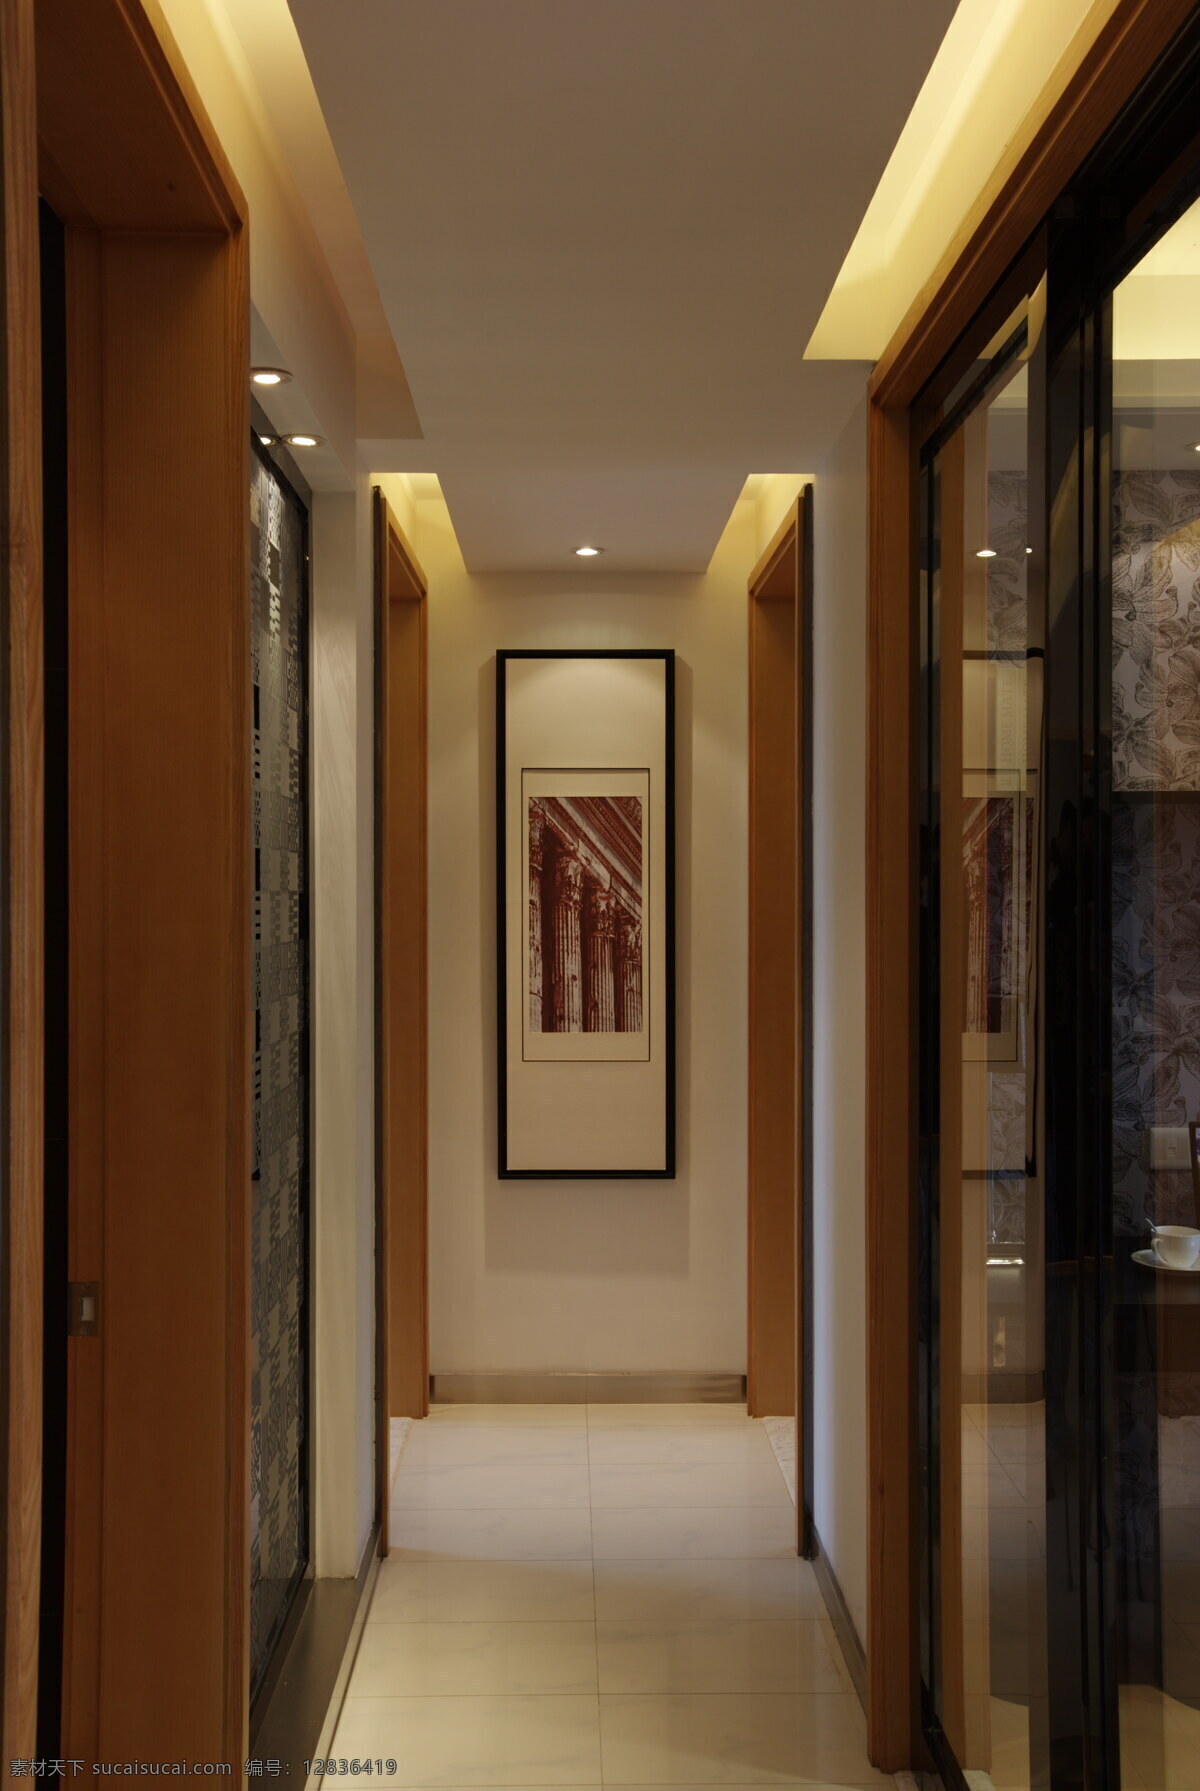 卫生间 过道 效果图 3d贴图 卫生间过道 高清 渲染 图 3d 家居装饰素材 室内设计